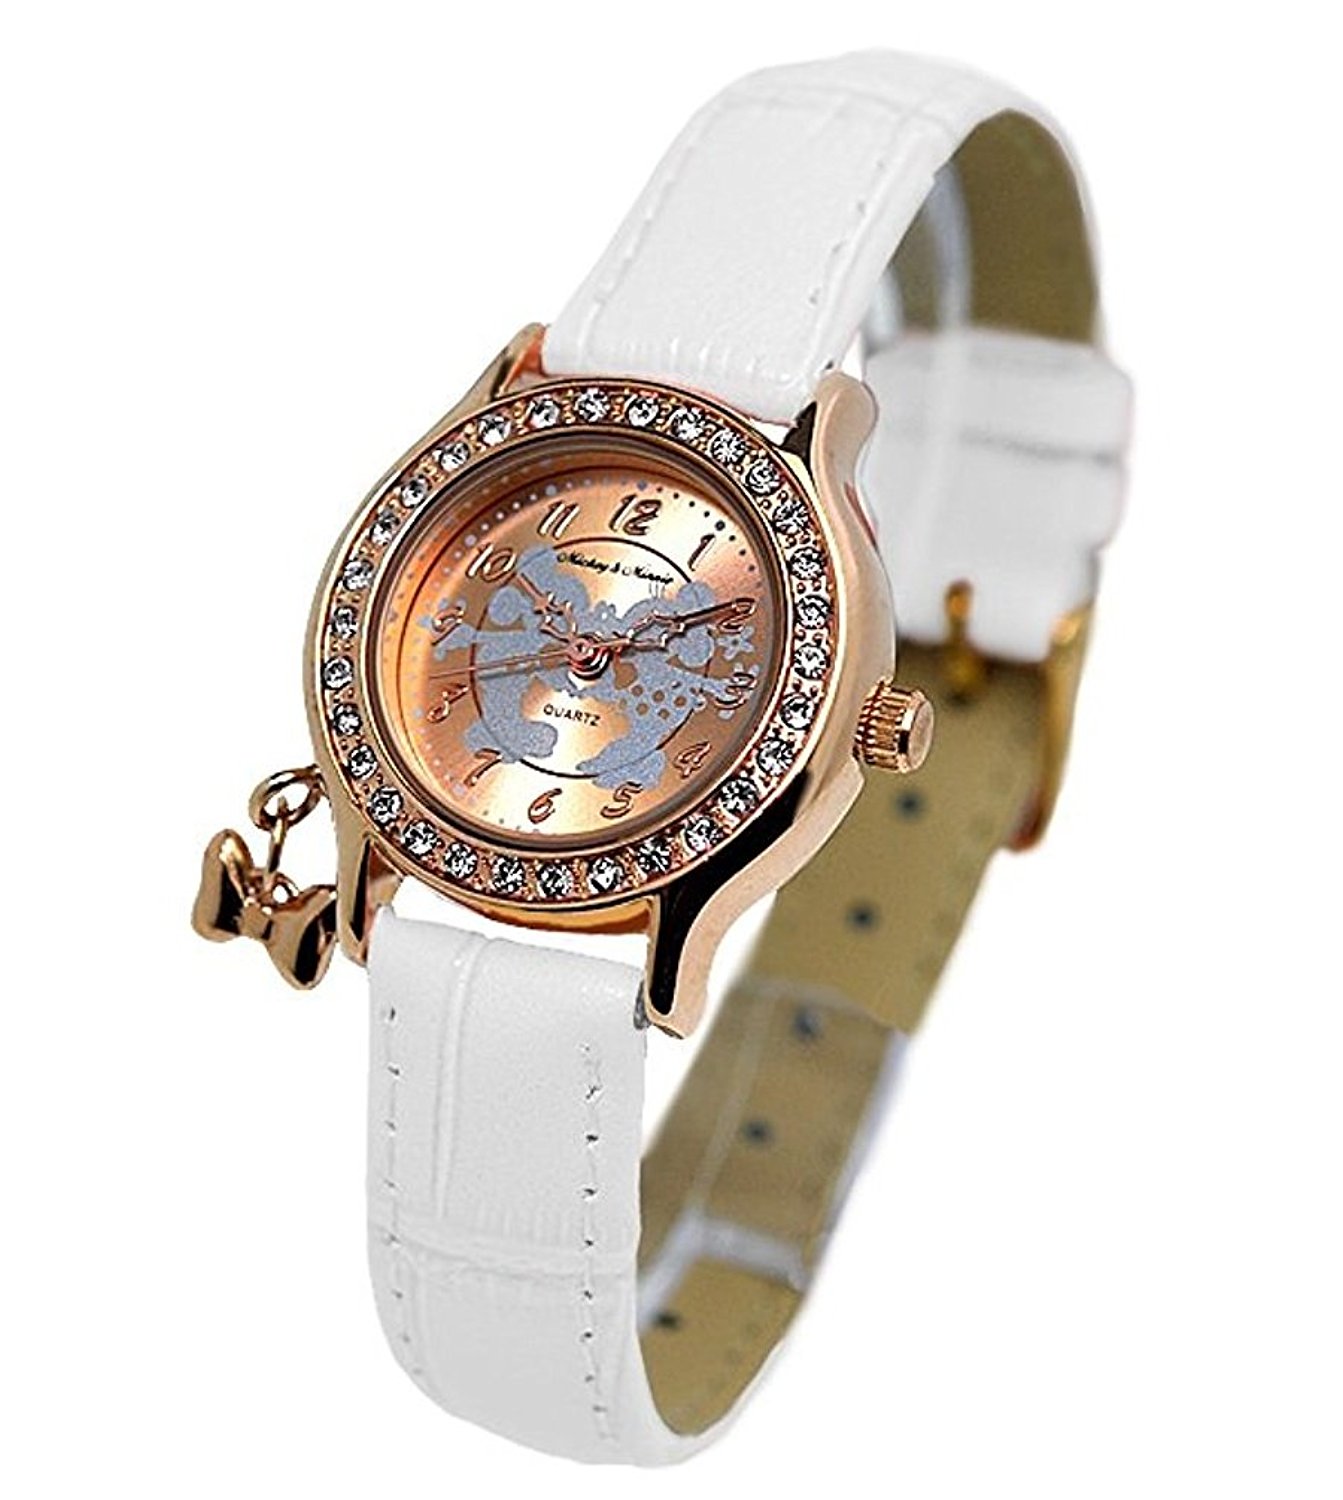 スワロフスキーの人気レディース腕時計12選 プレゼントにもおすすめ ベストプレゼントガイド